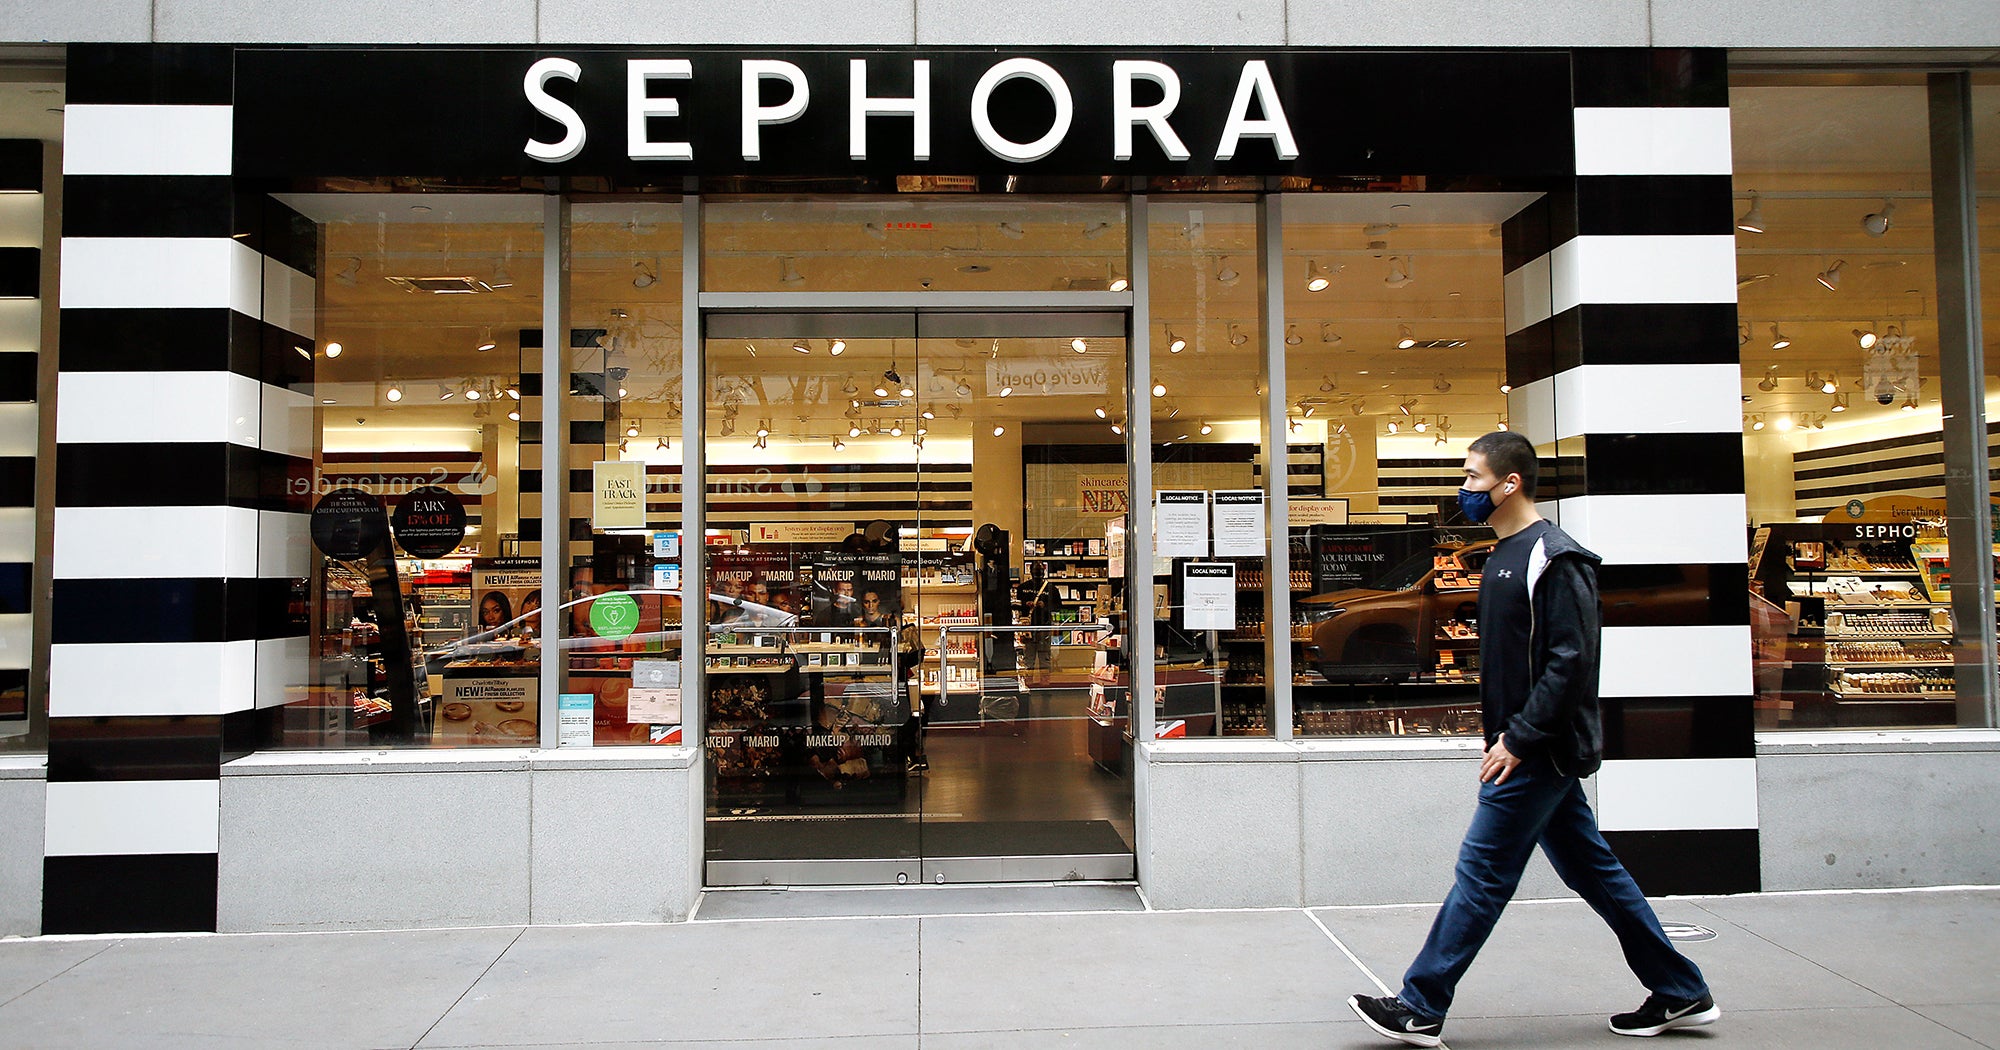 Sephora: retail sales in the U.S. 2017-2020